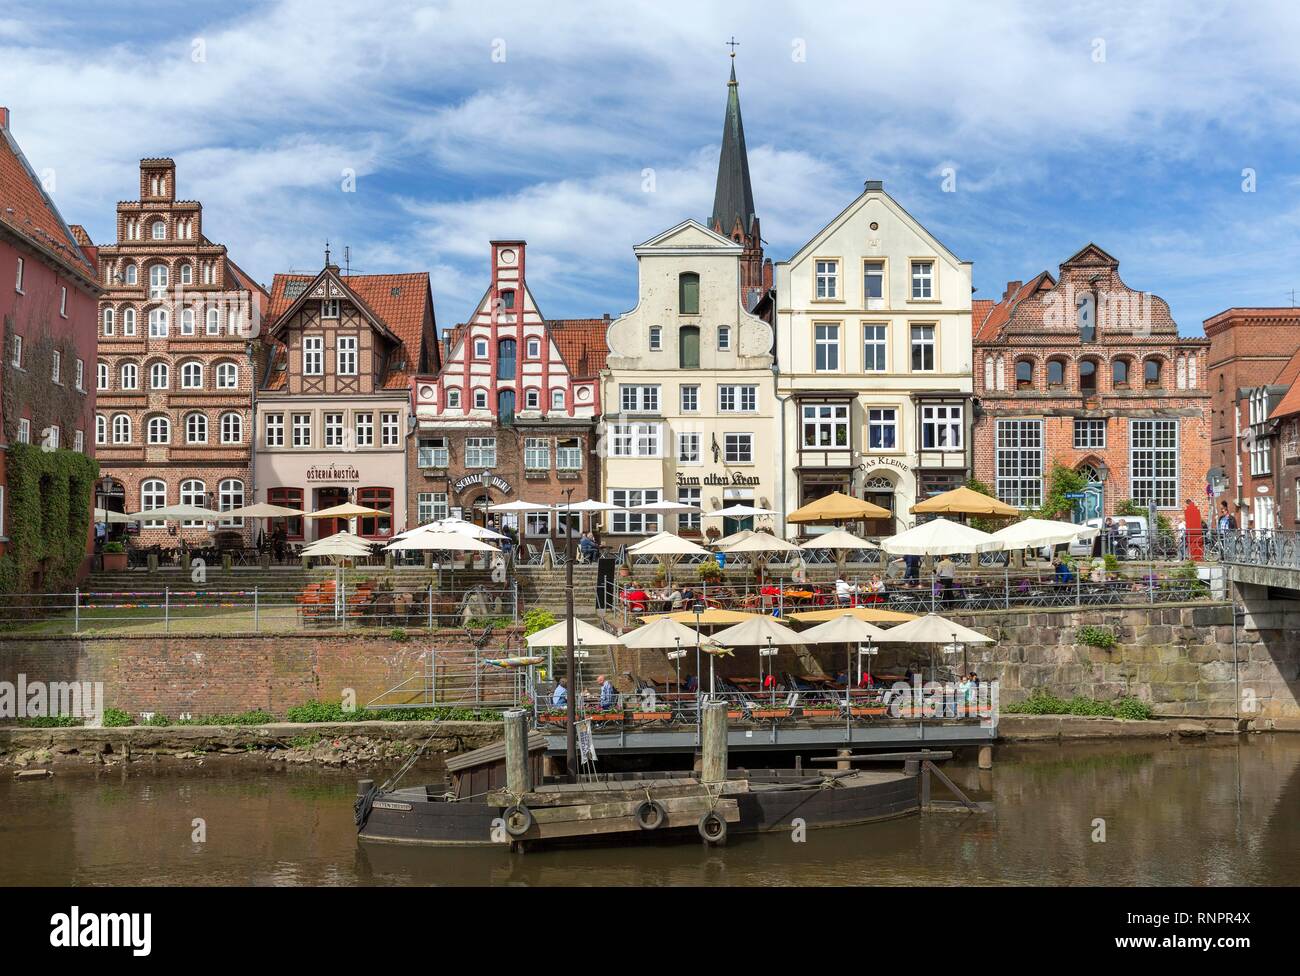 Case cittadine storiche e case di mercanti, porto vecchio, città vecchia, Lüneburg, Bassa Sassonia, Germania Foto Stock